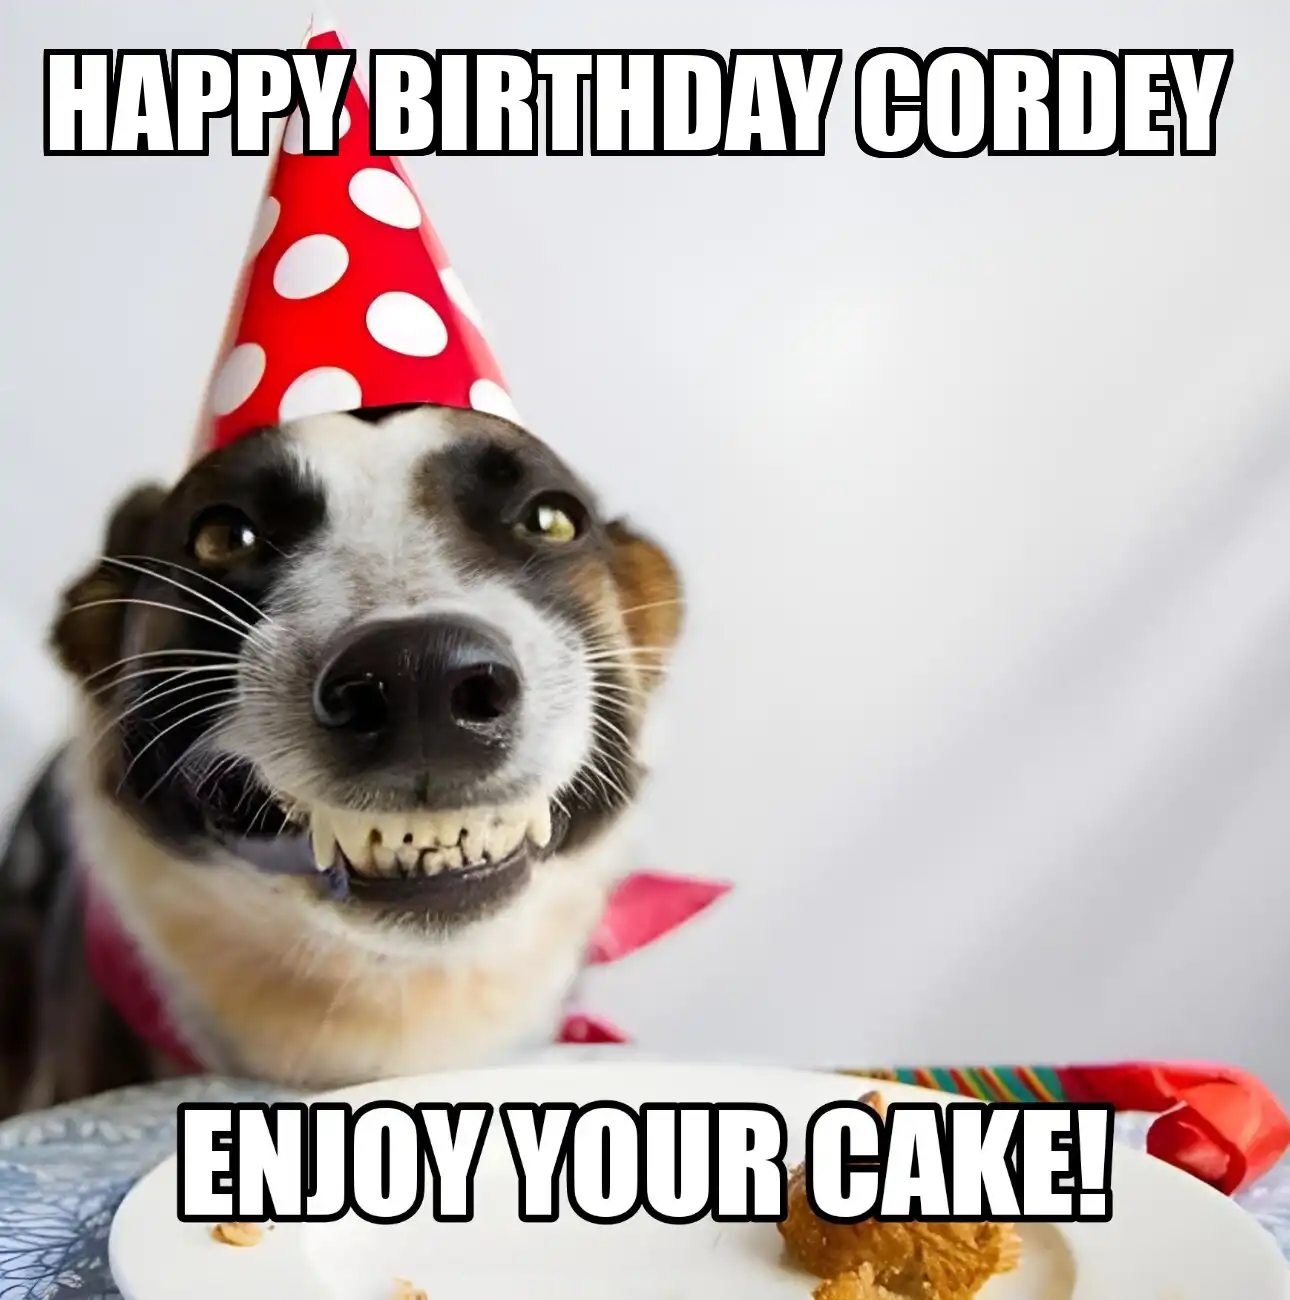 Happy Birthday Cordey Enjoy Your Cake Dog Meme